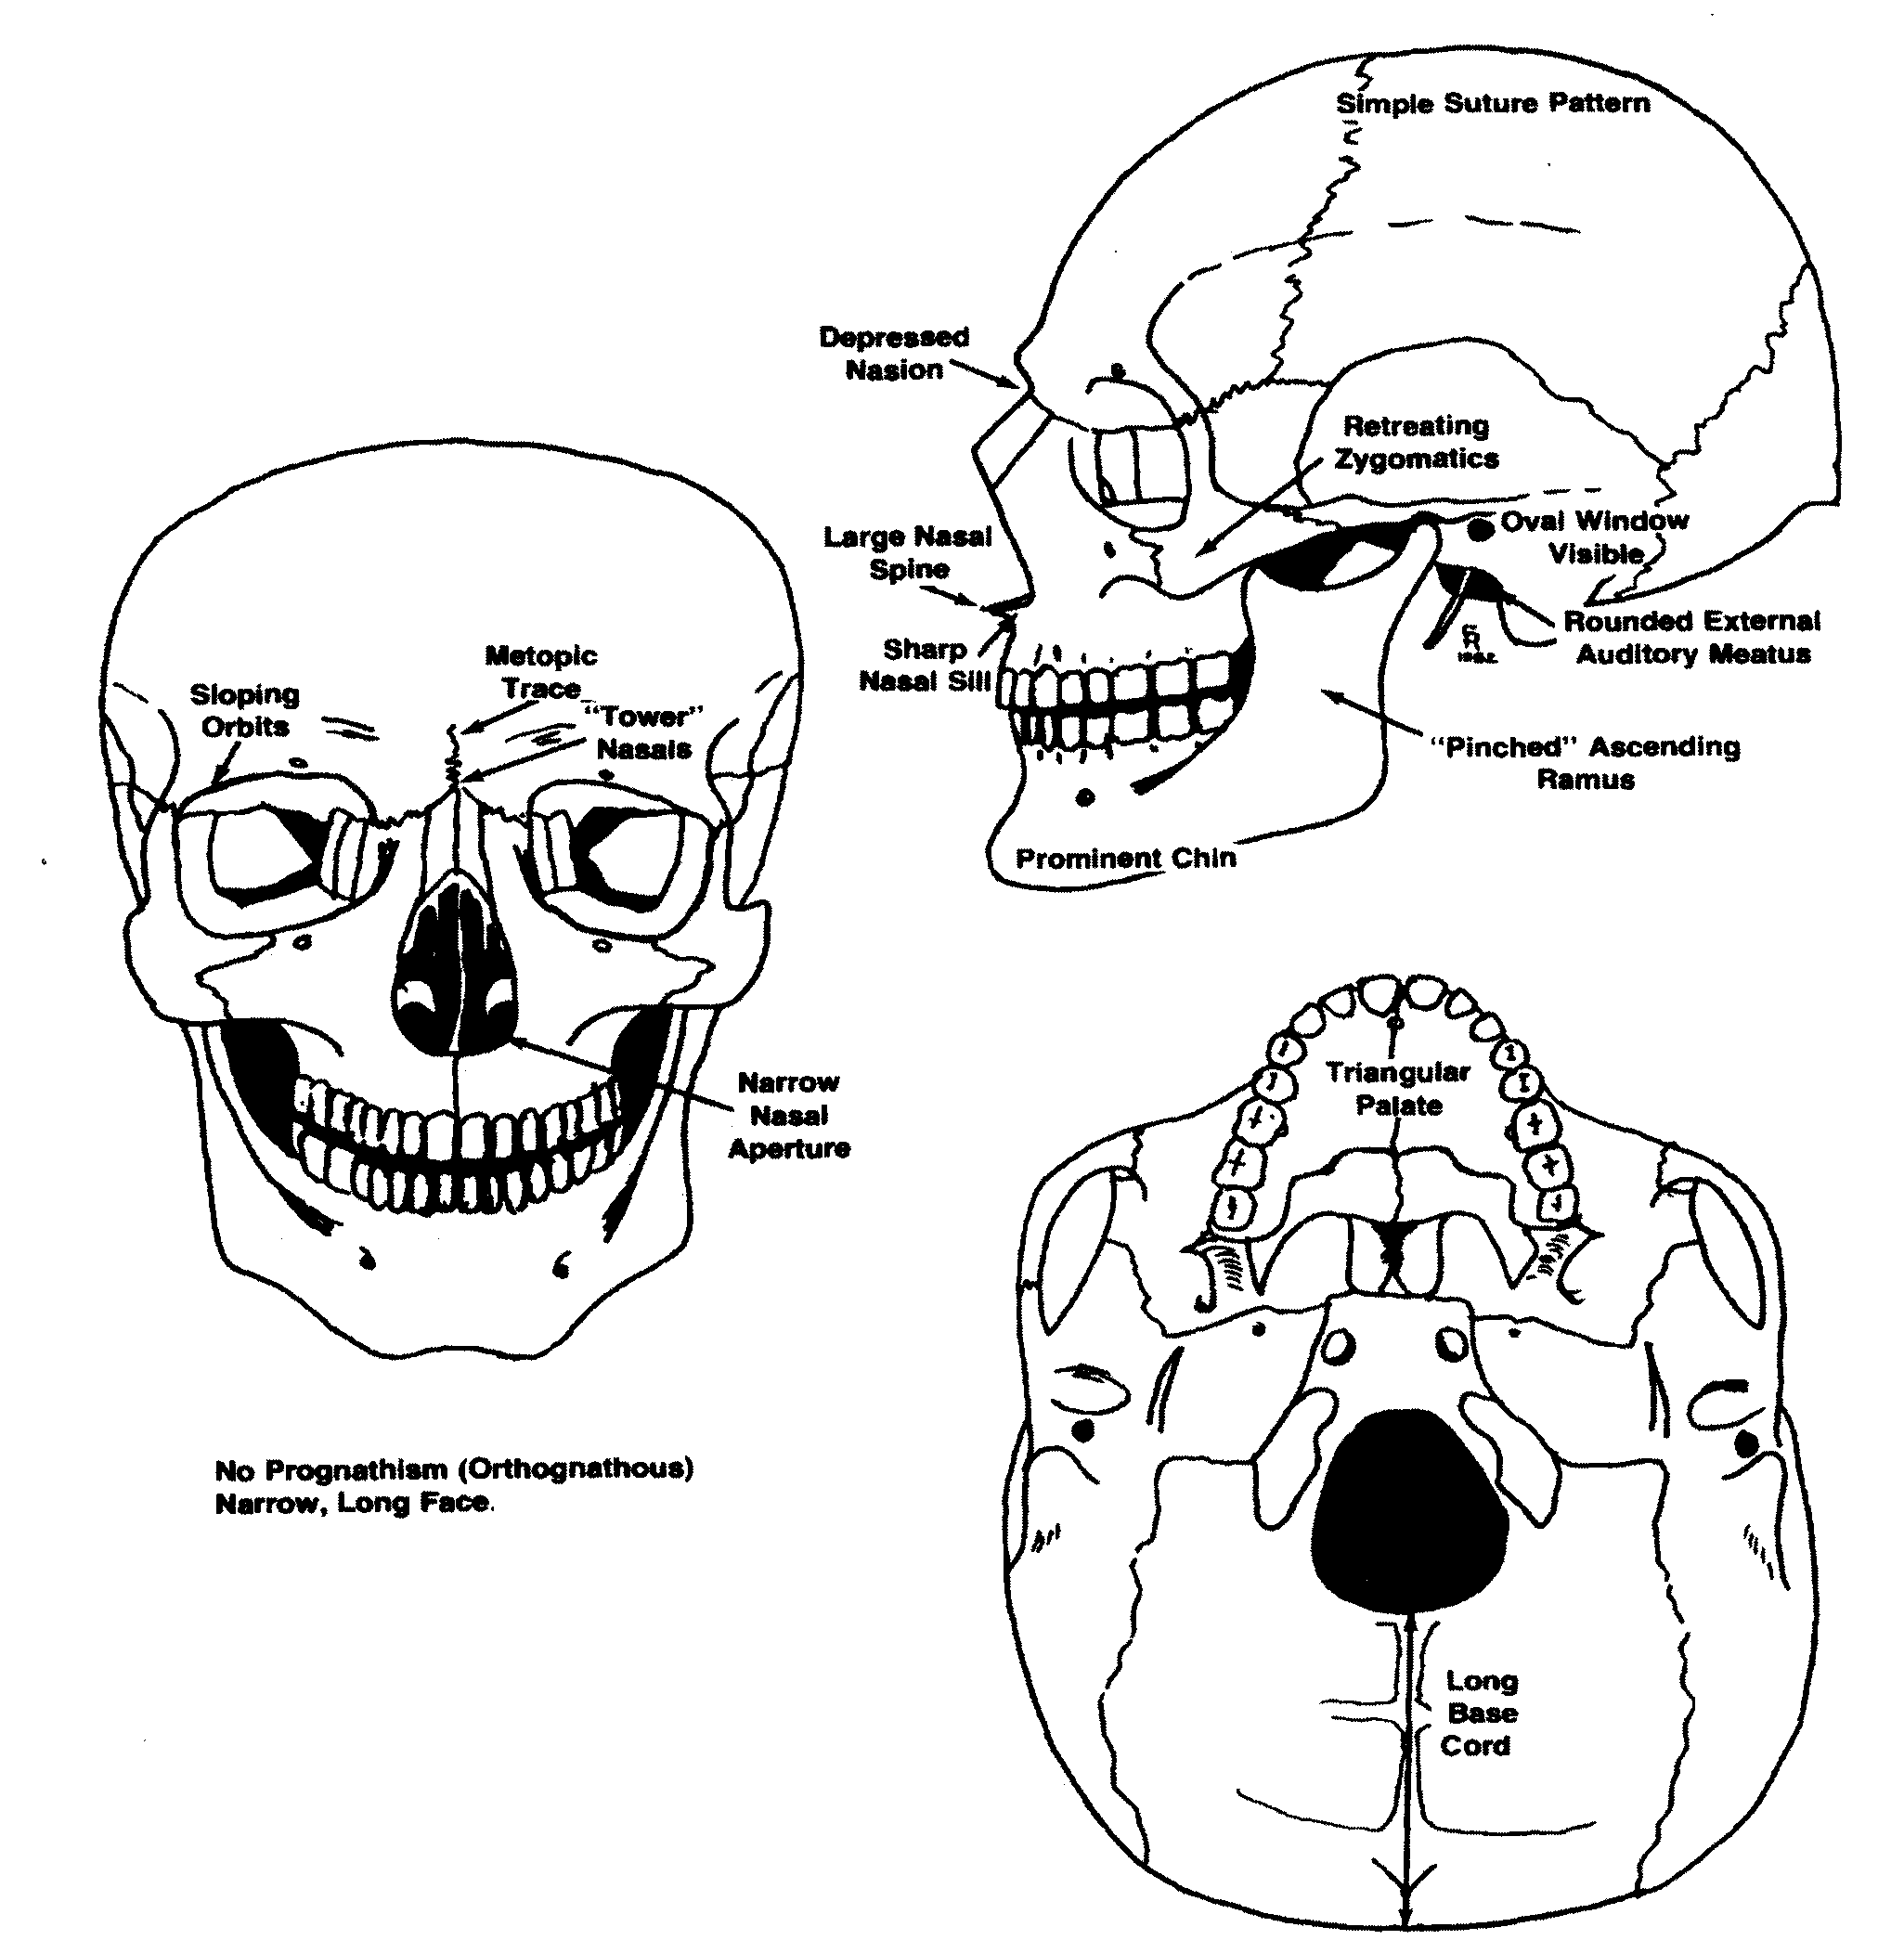 caucasoid skull